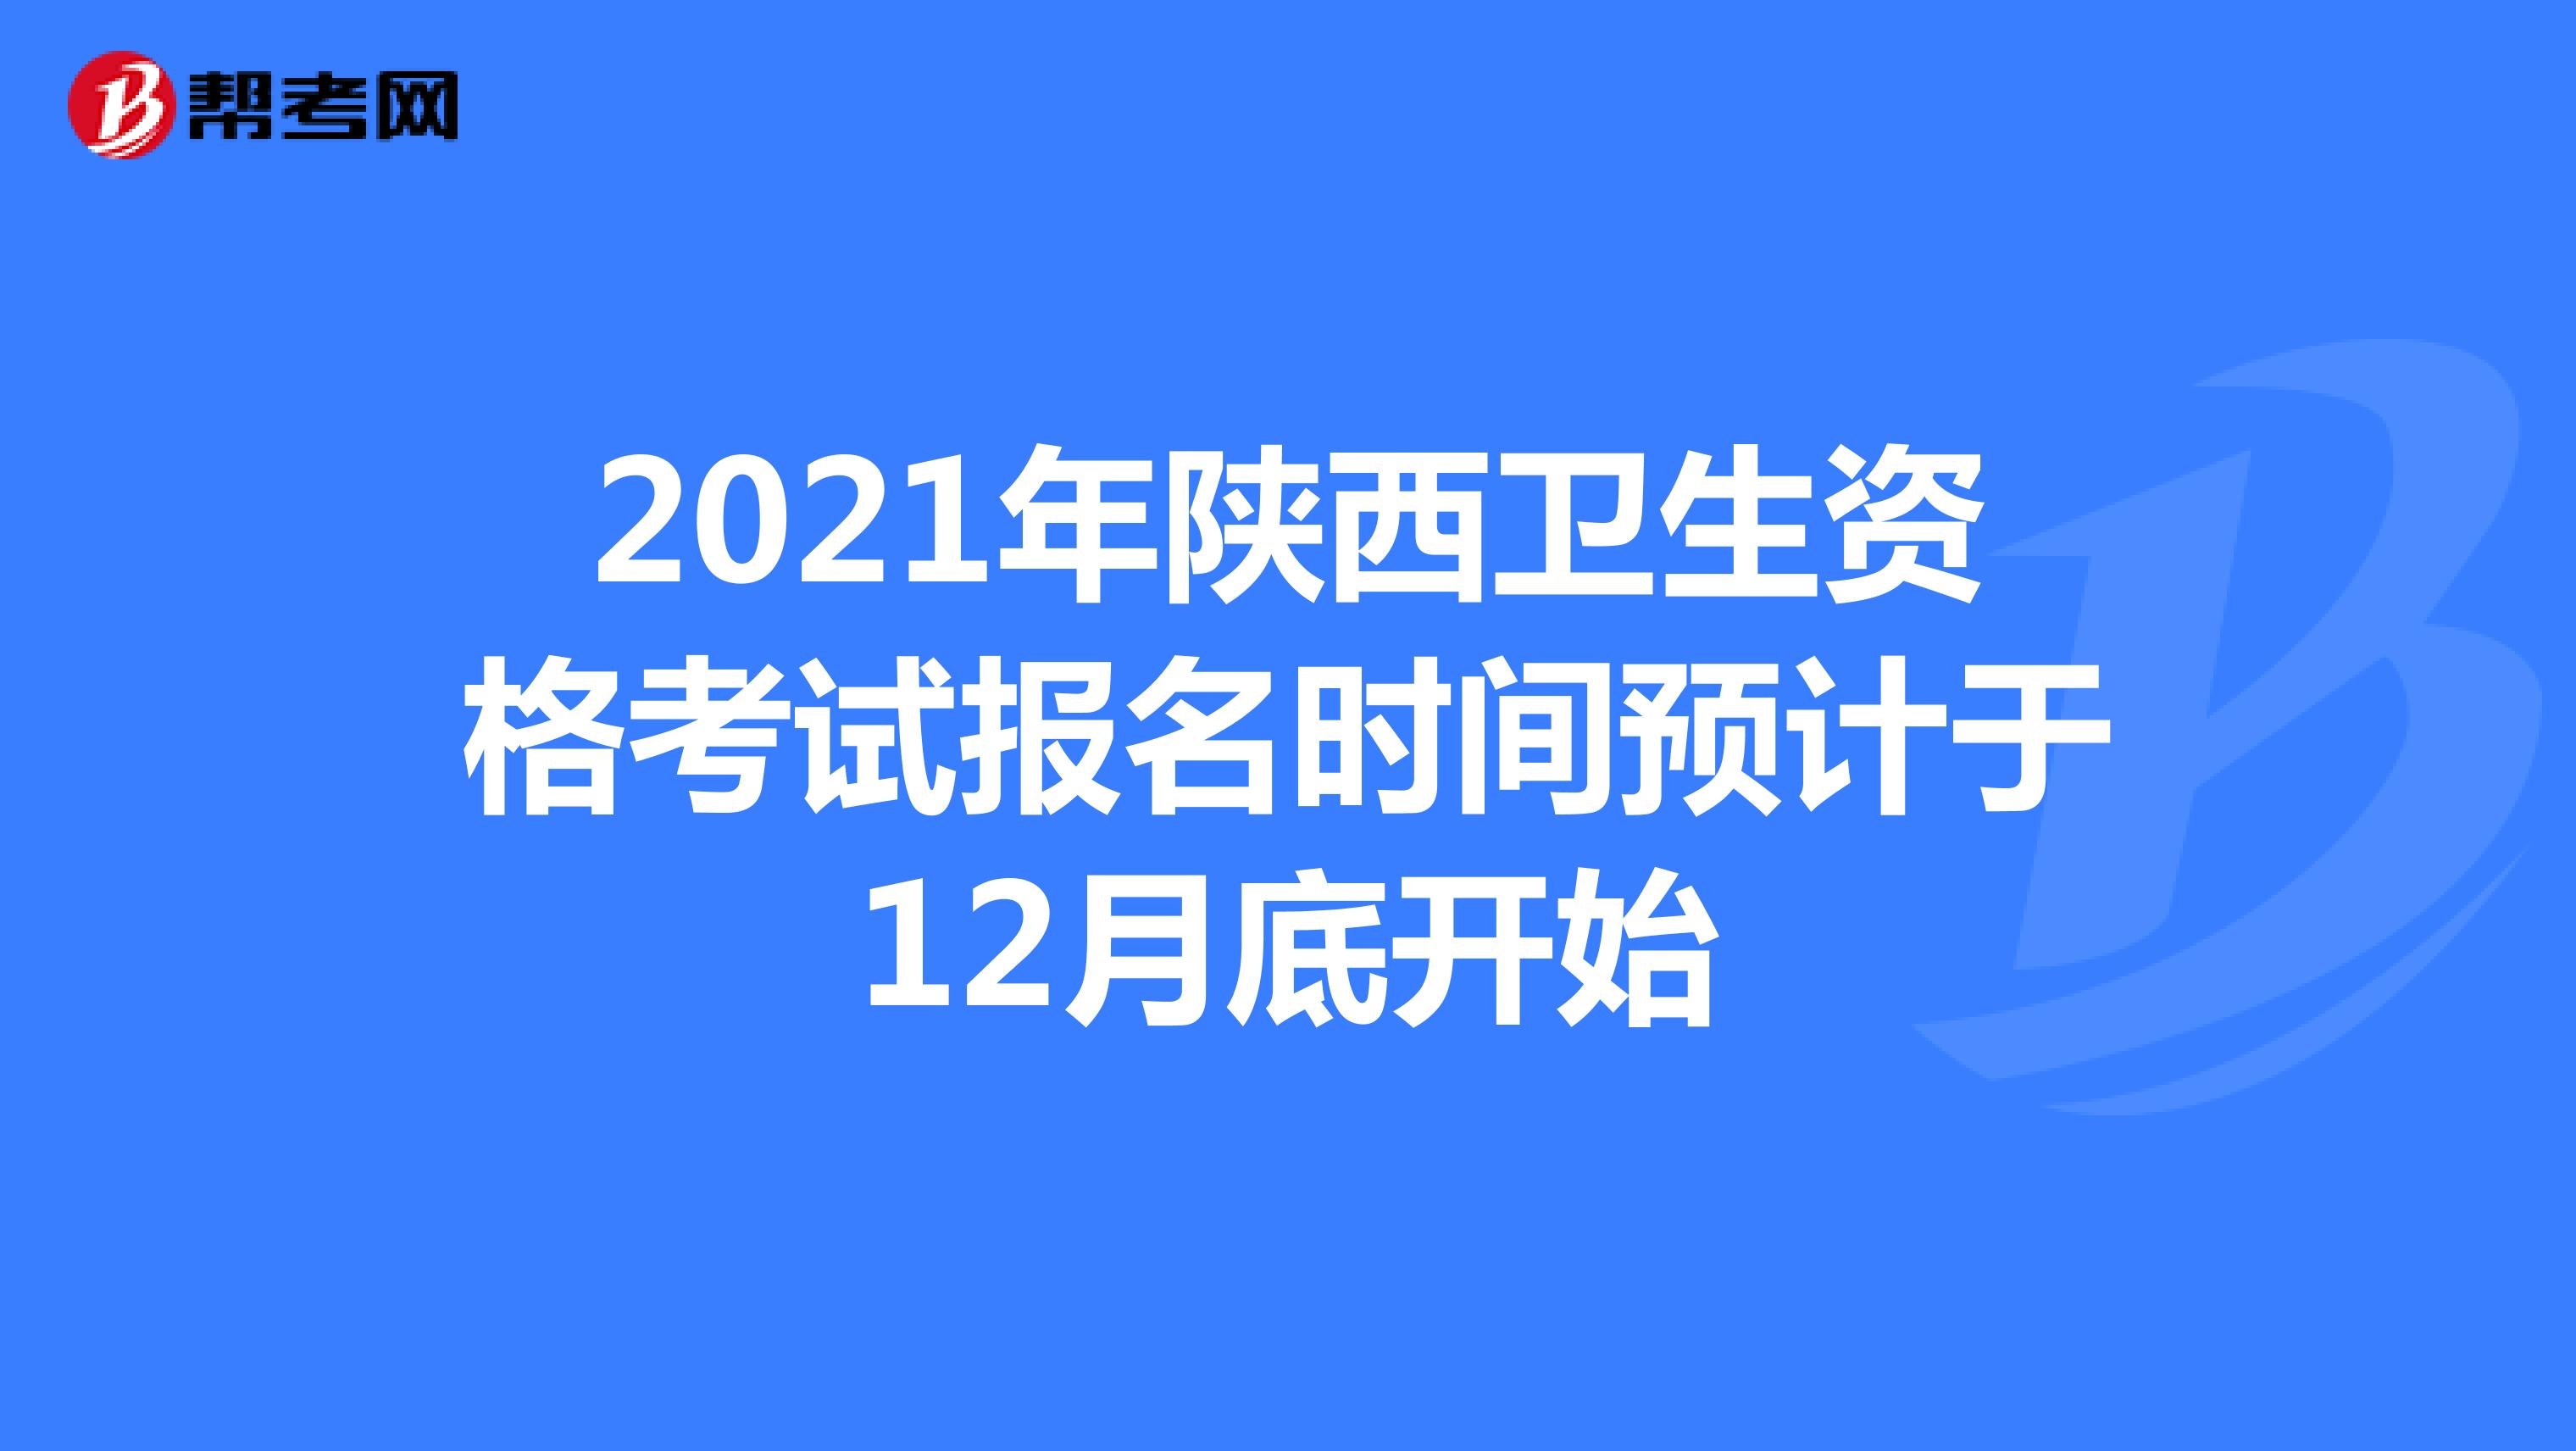 2021年陕西卫生资格考试报名时间预计于12月底开始